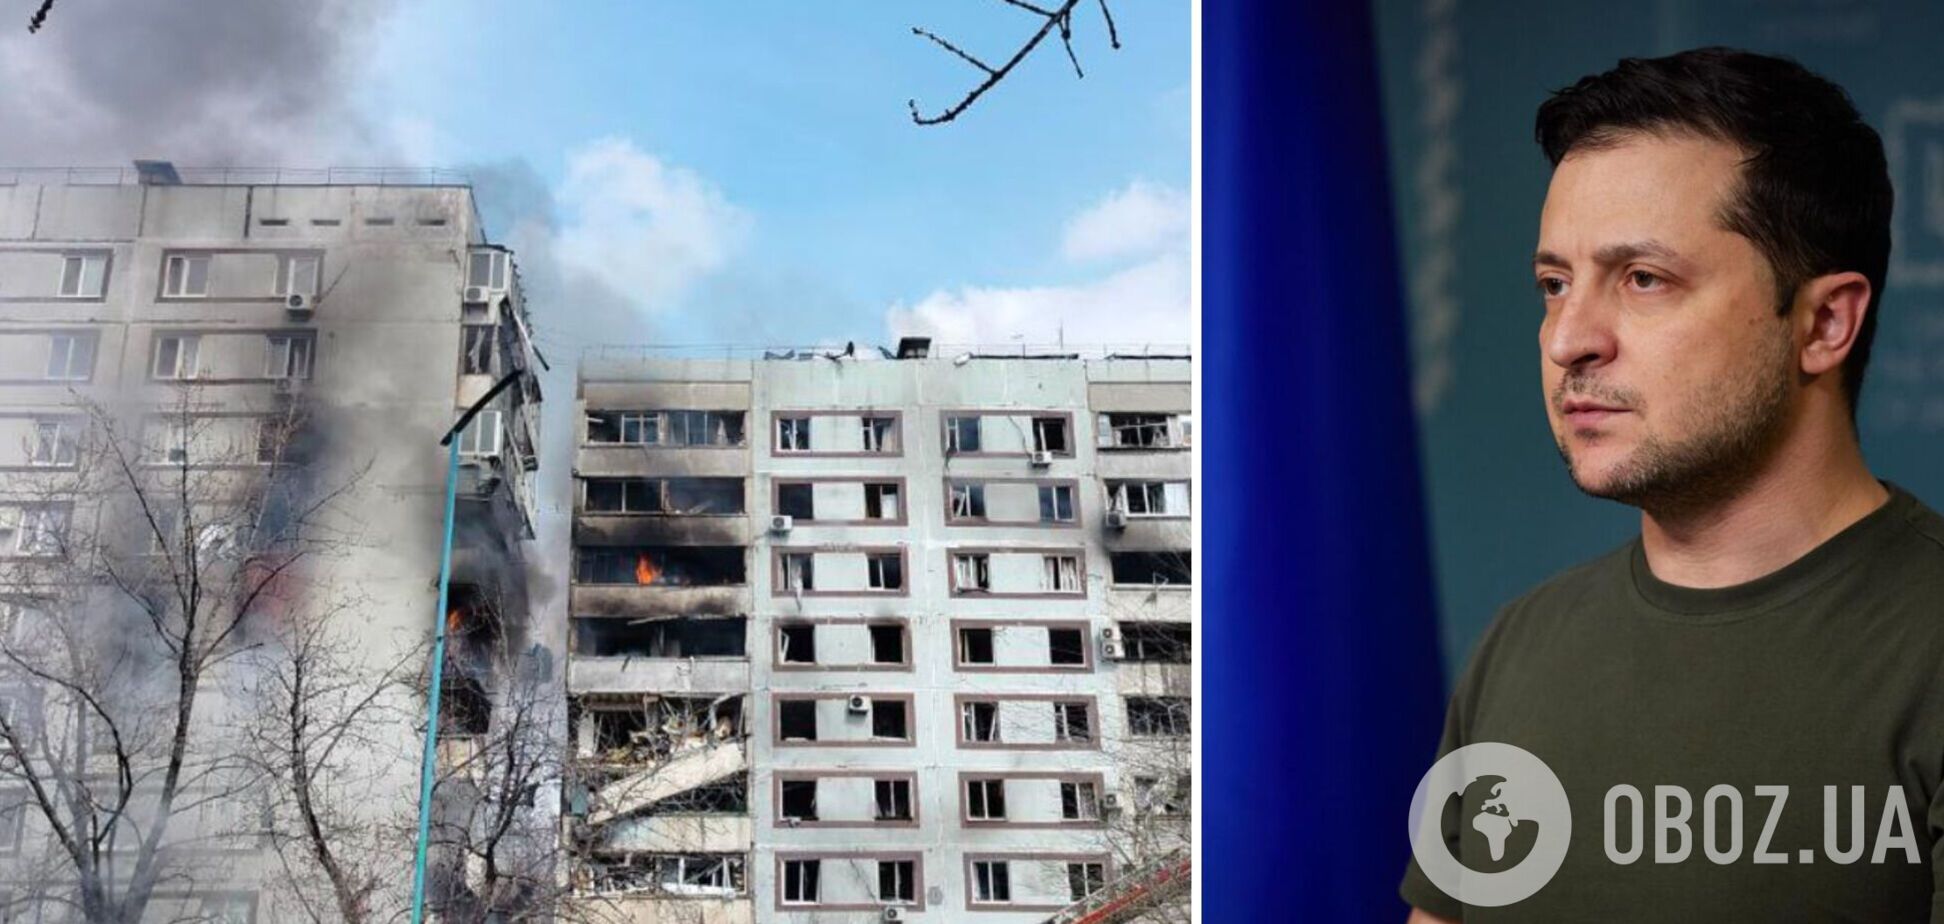 Зеленский отреагировал на ракетный удар РФ по дому в Запорожье: нужно больше решительности мира, чтобы победить террор